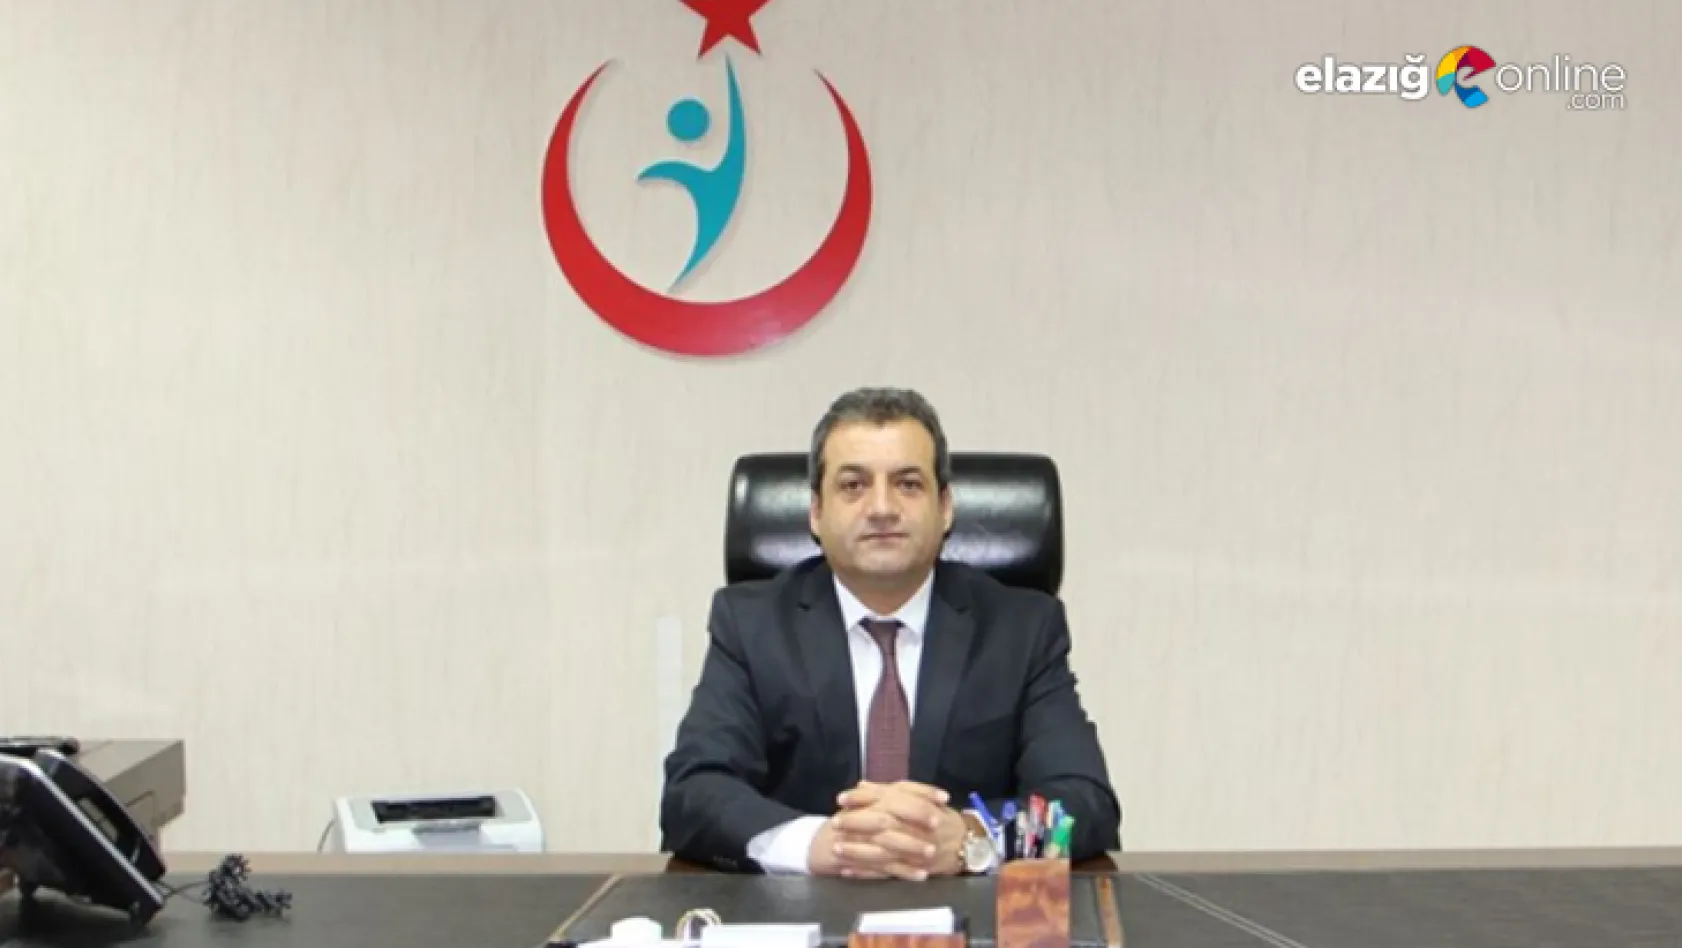 Elazığ Sağlık İl Müdürü Cahit Polat görevinden ayrıldı